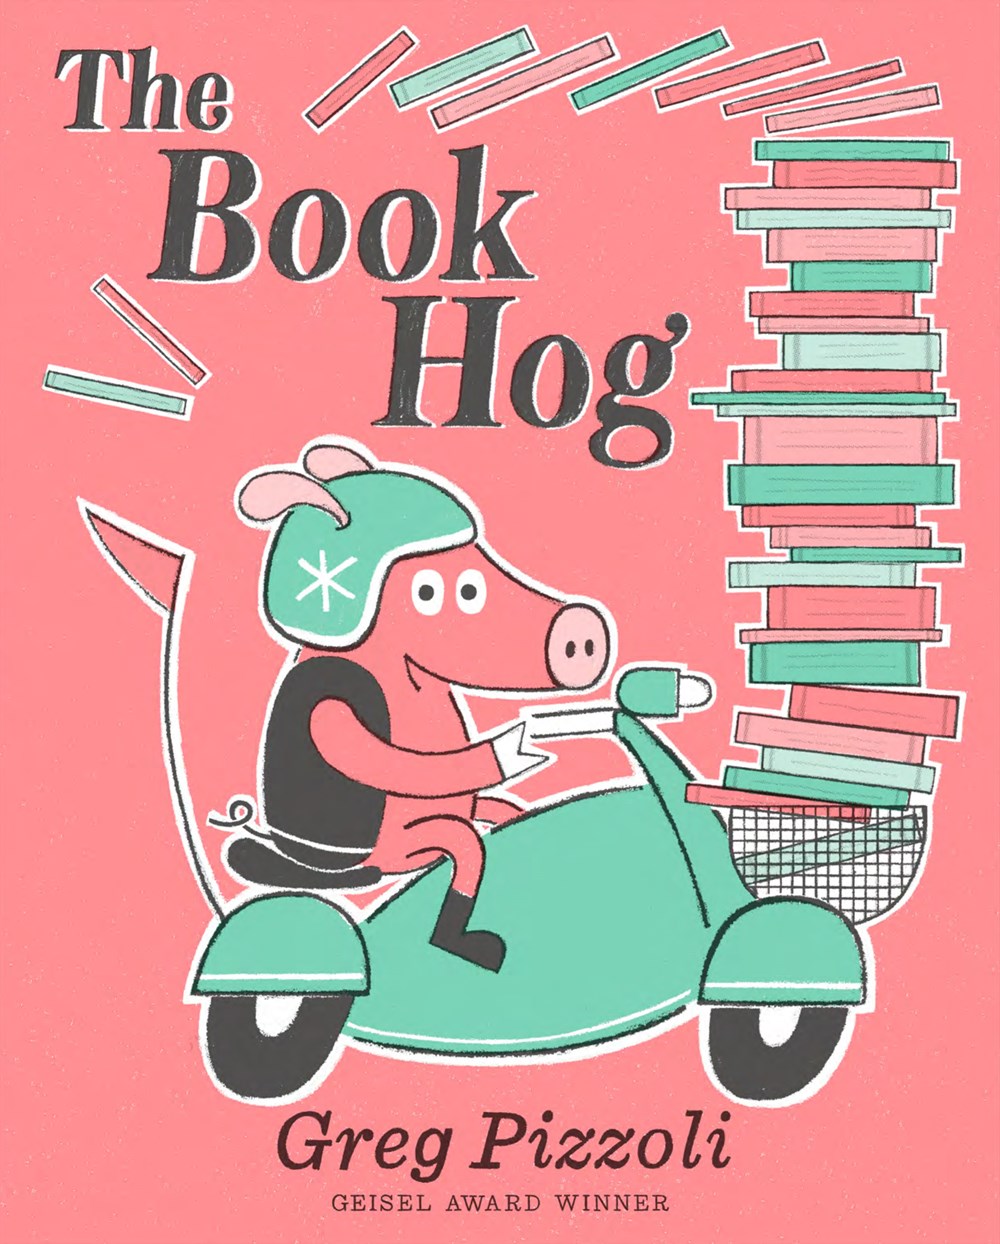 The book hog